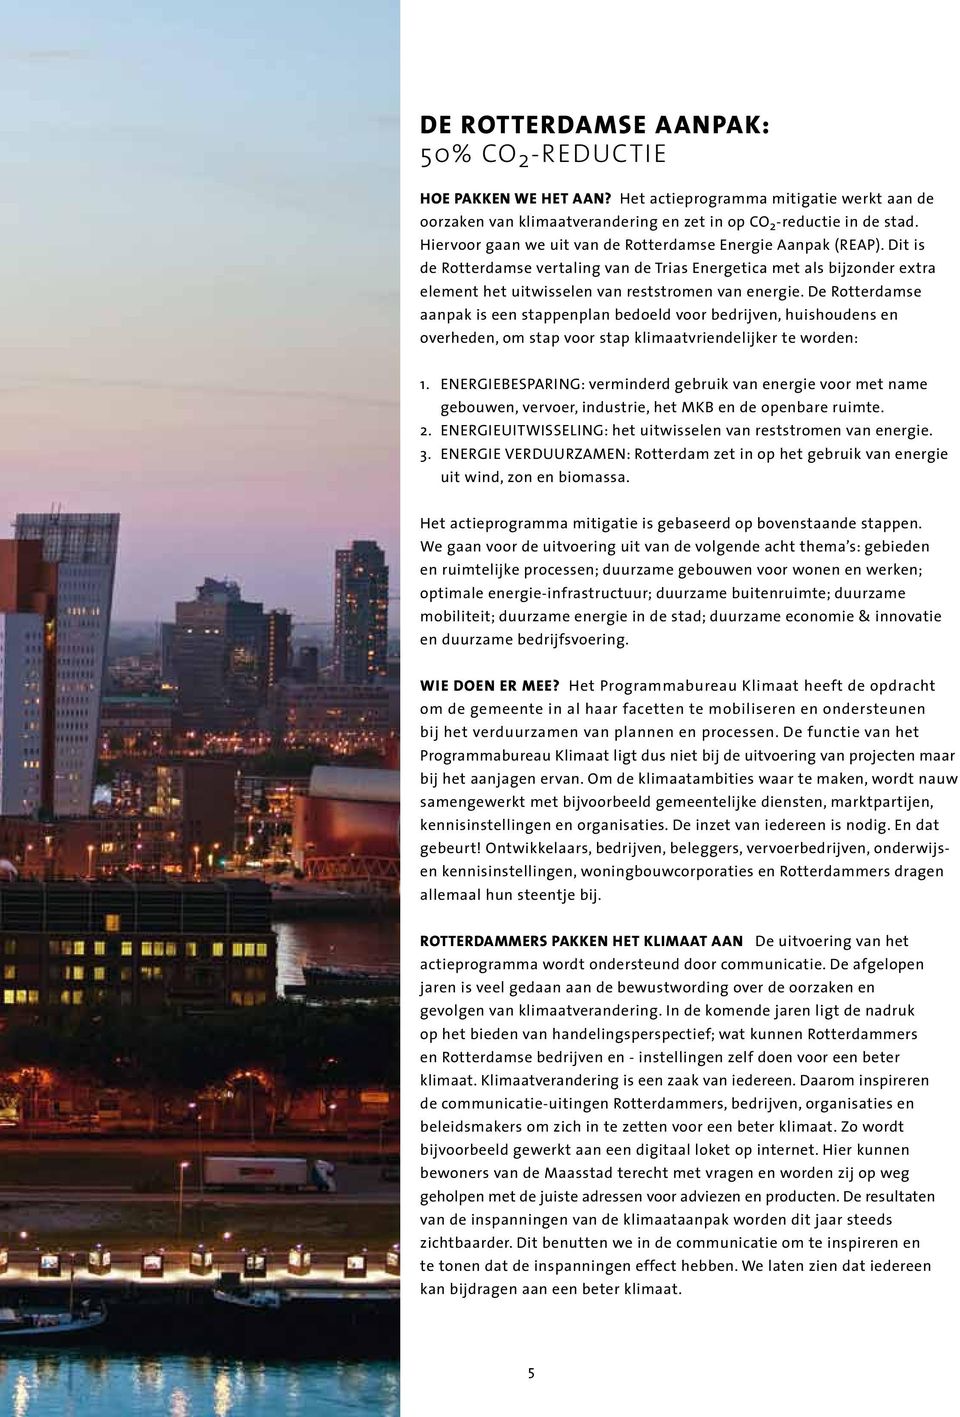 De Rotterdamse aanpak is een stappenplan bedoeld voor bedrijven, huishoudens en overheden, om stap voor stap klimaatvriendelijker te worden: 1.